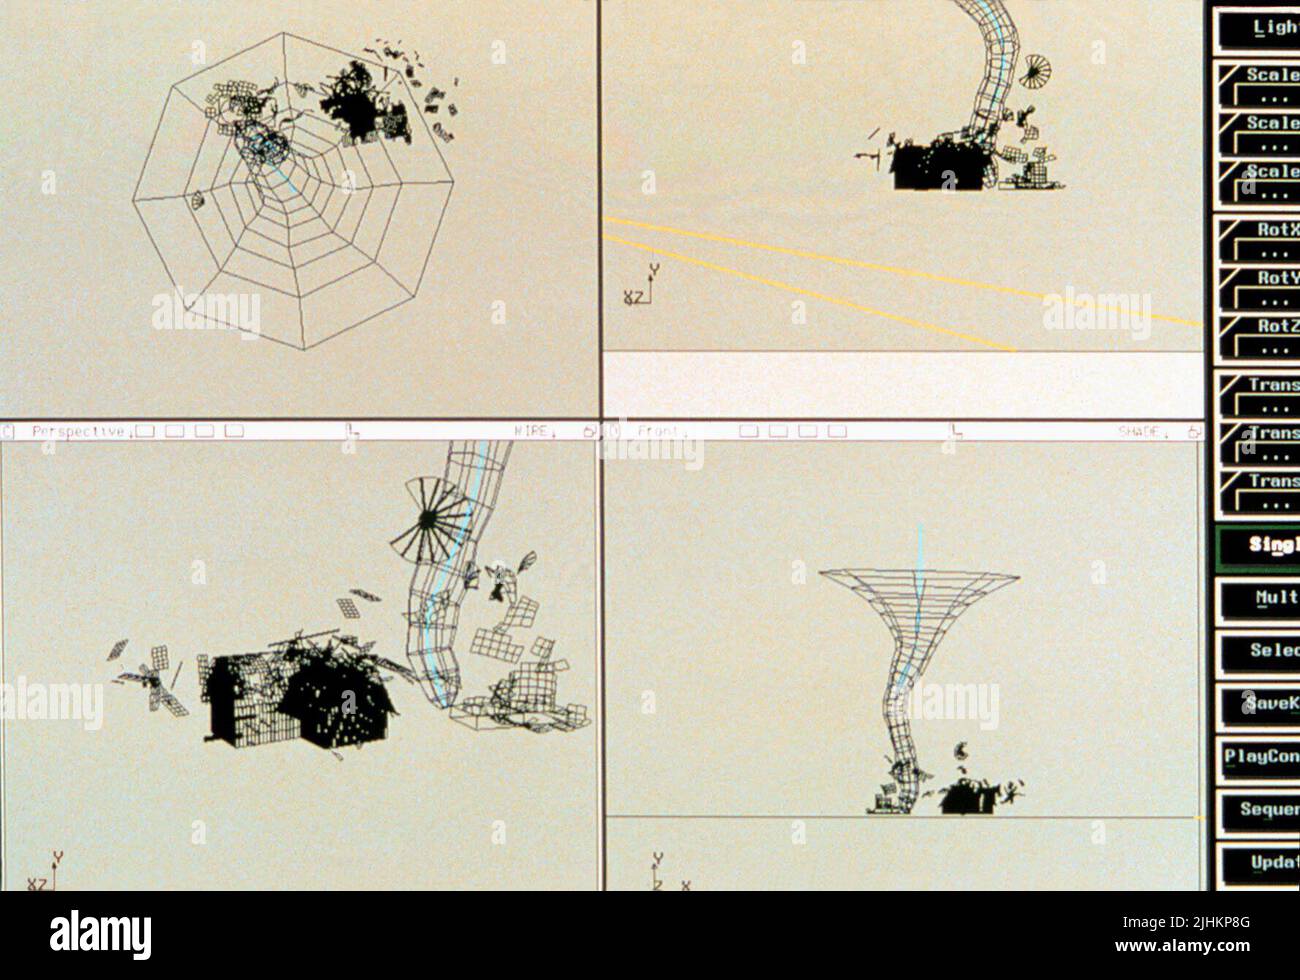 Les effets visuels (CGI) JEEP DANS LE CHAMP DE LA SCÈNE 1 3, Twister, 1996 Banque D'Images